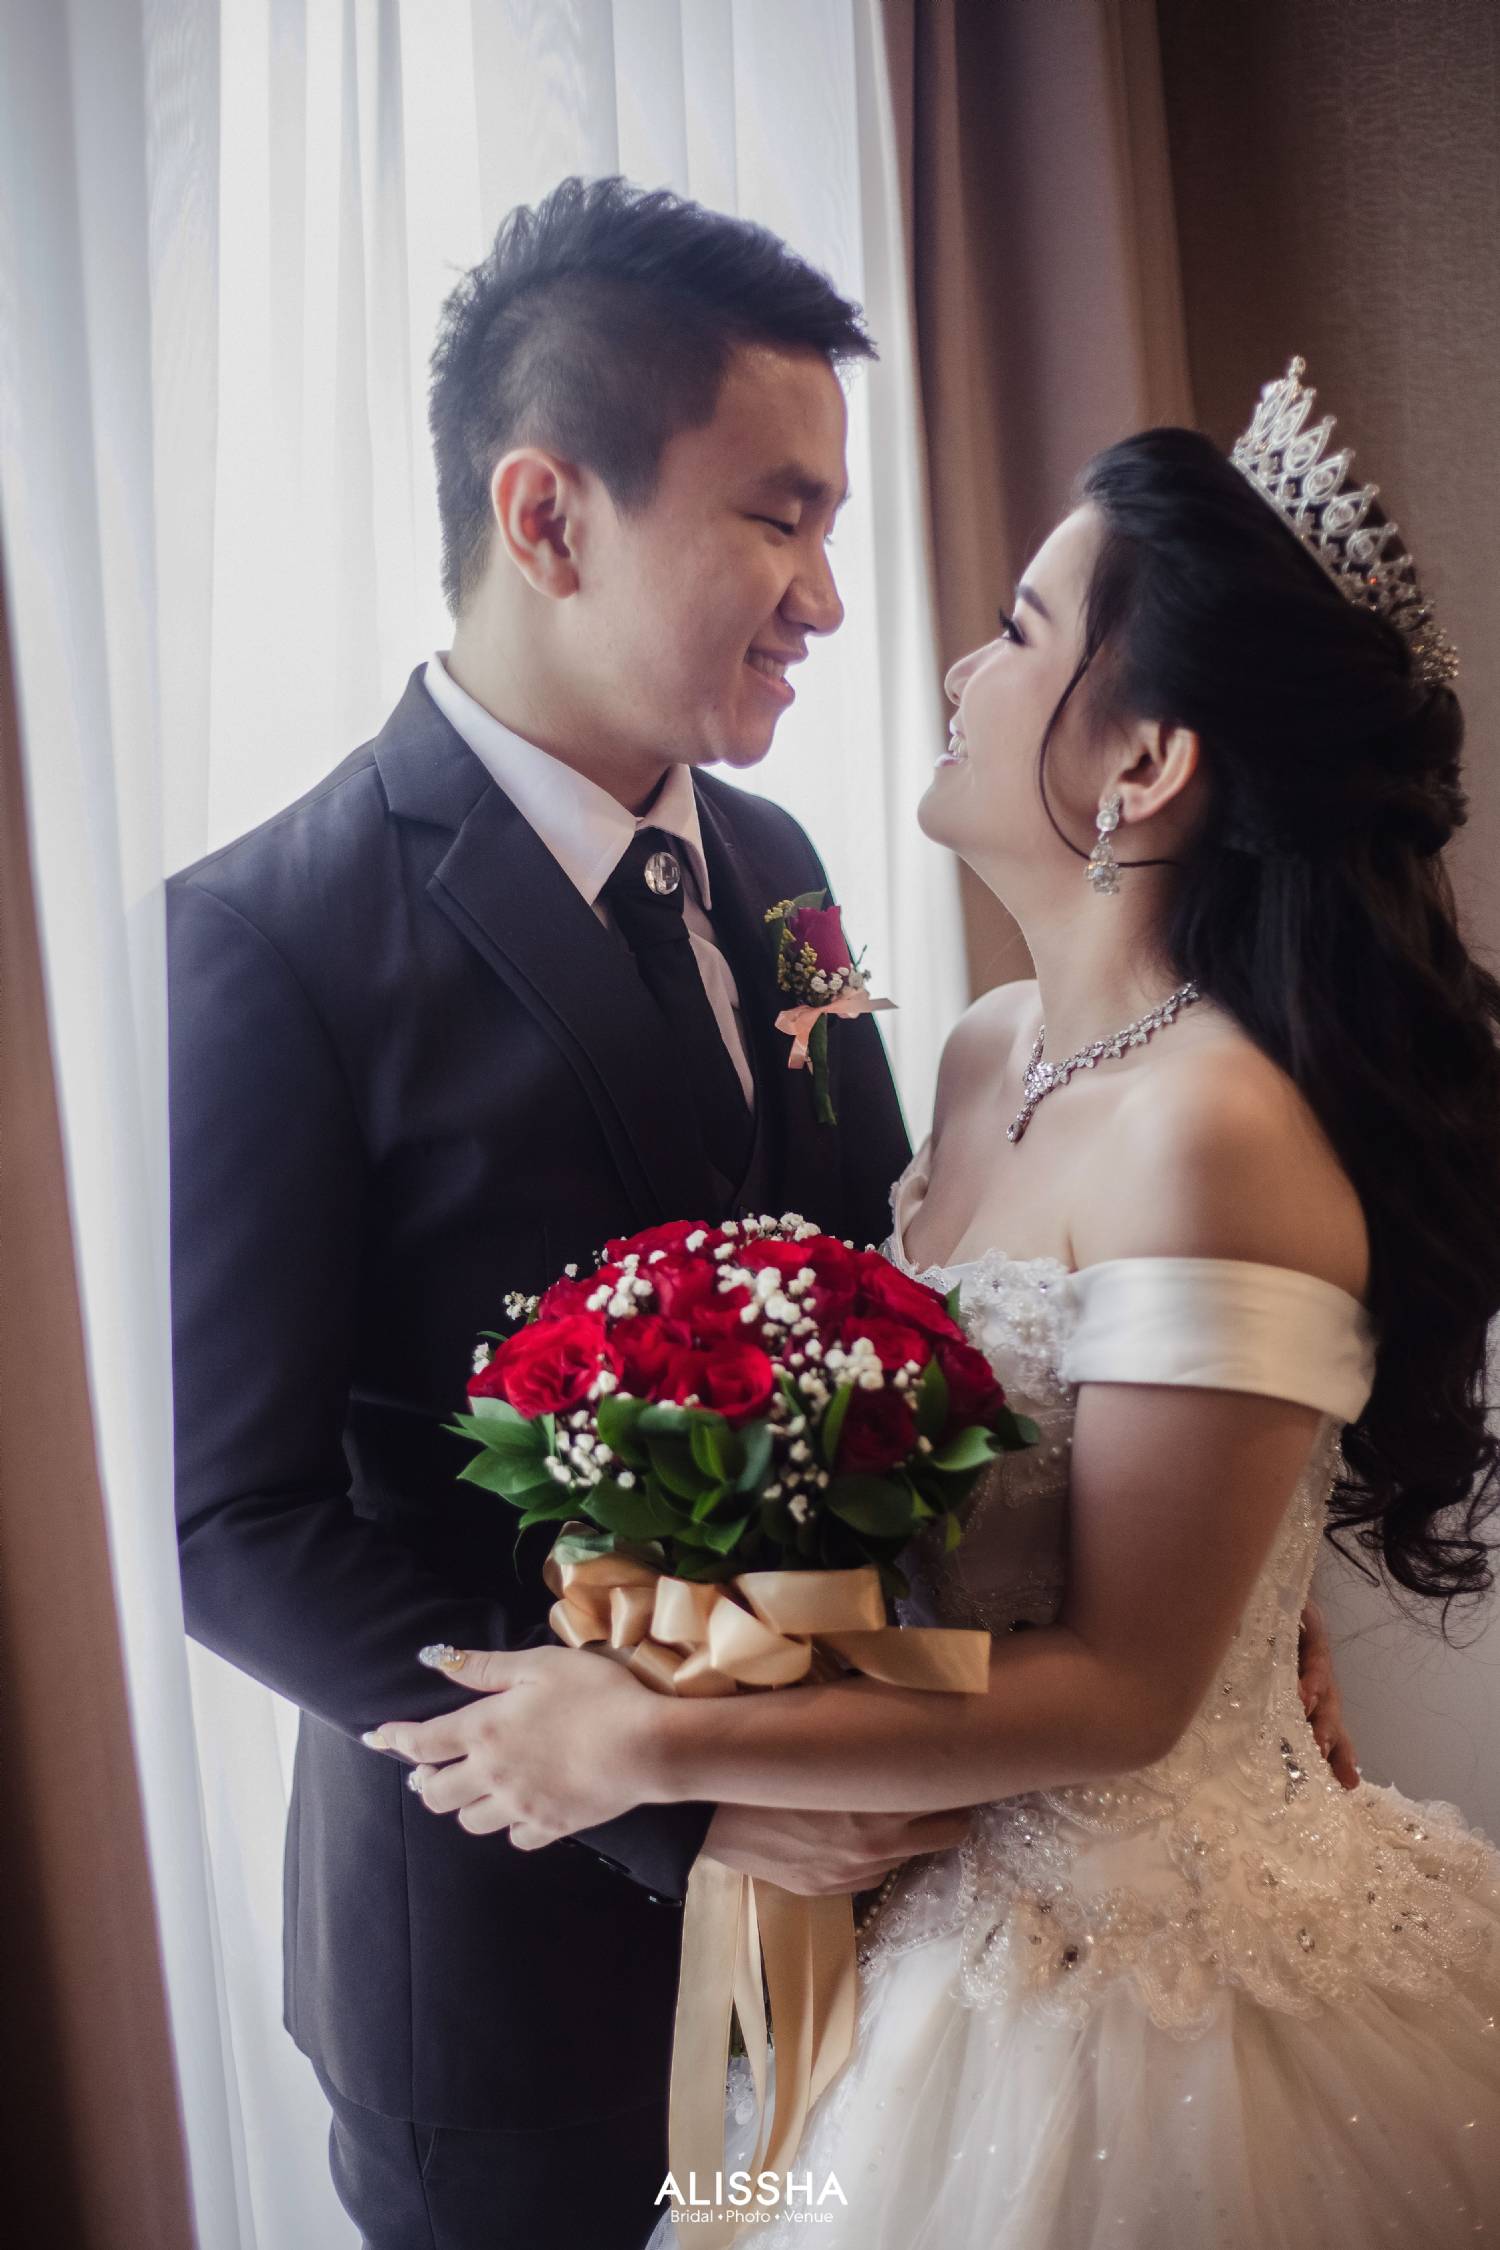 Wedding Day Mardiana & Zainal 30-06-2019 15